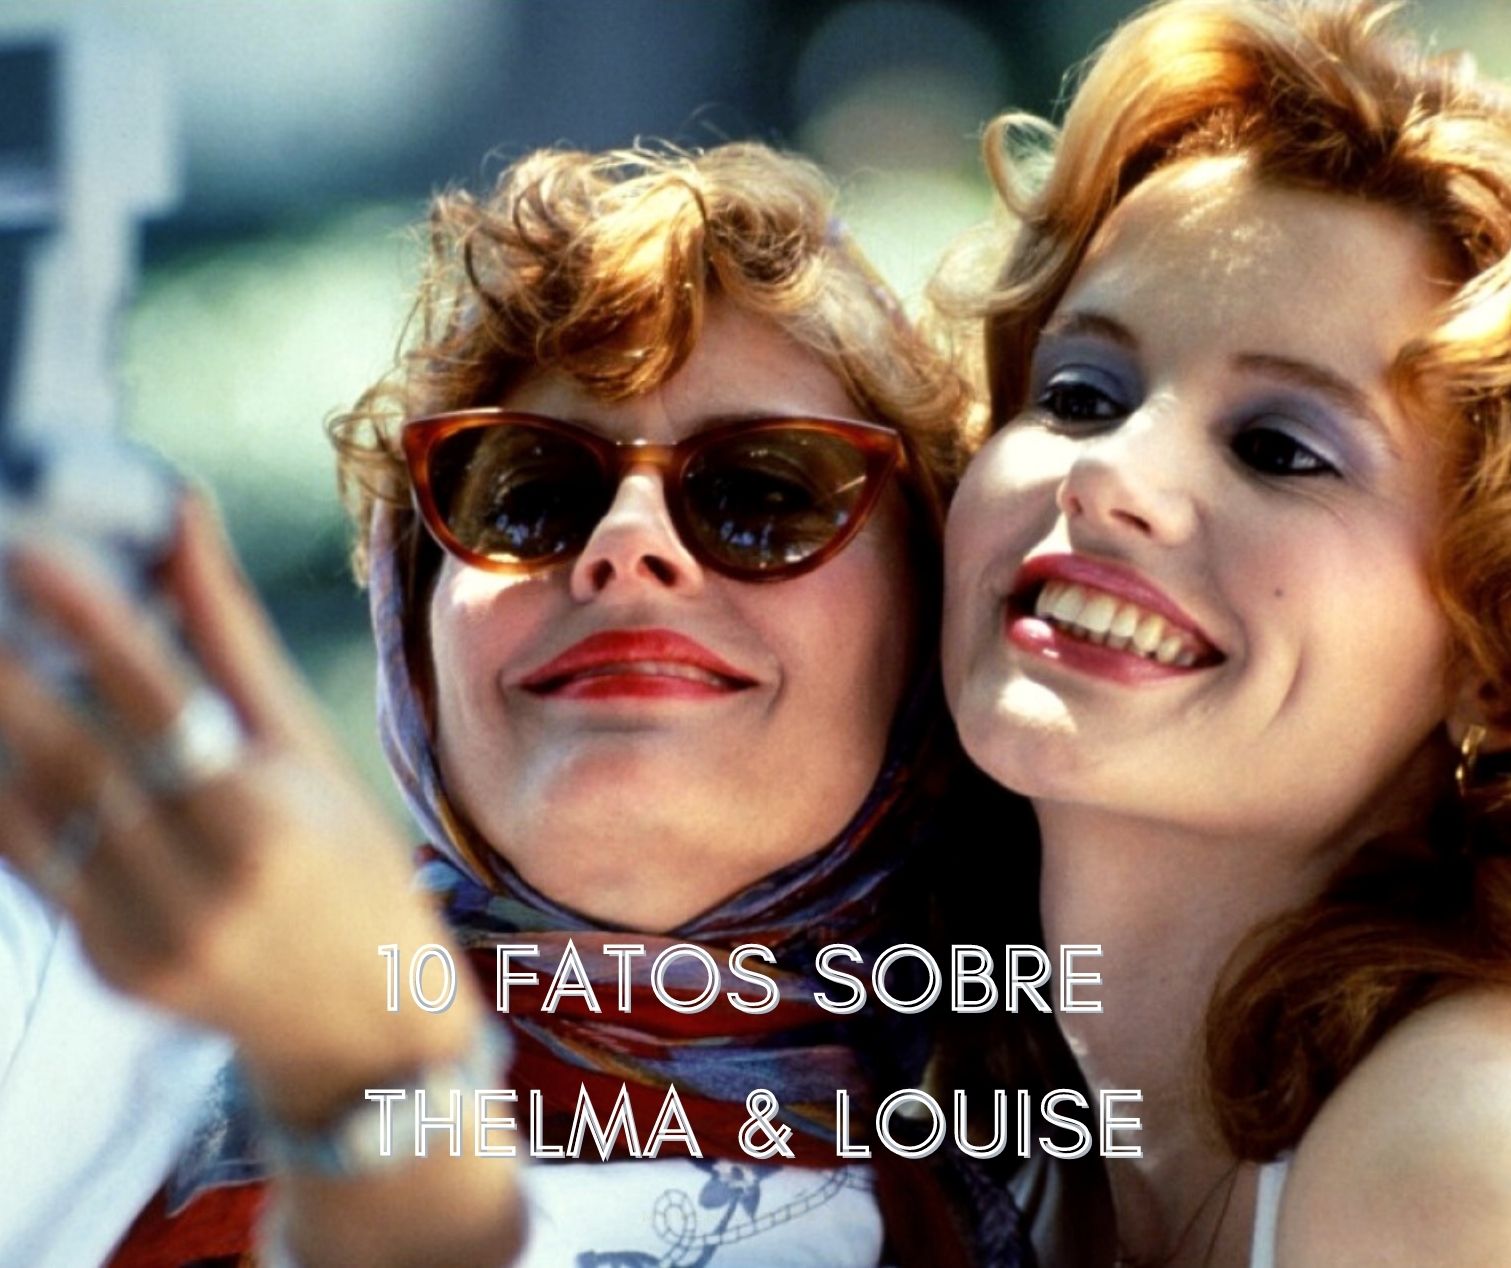 10 coisas que você não sabia sobre Thelma & Louise